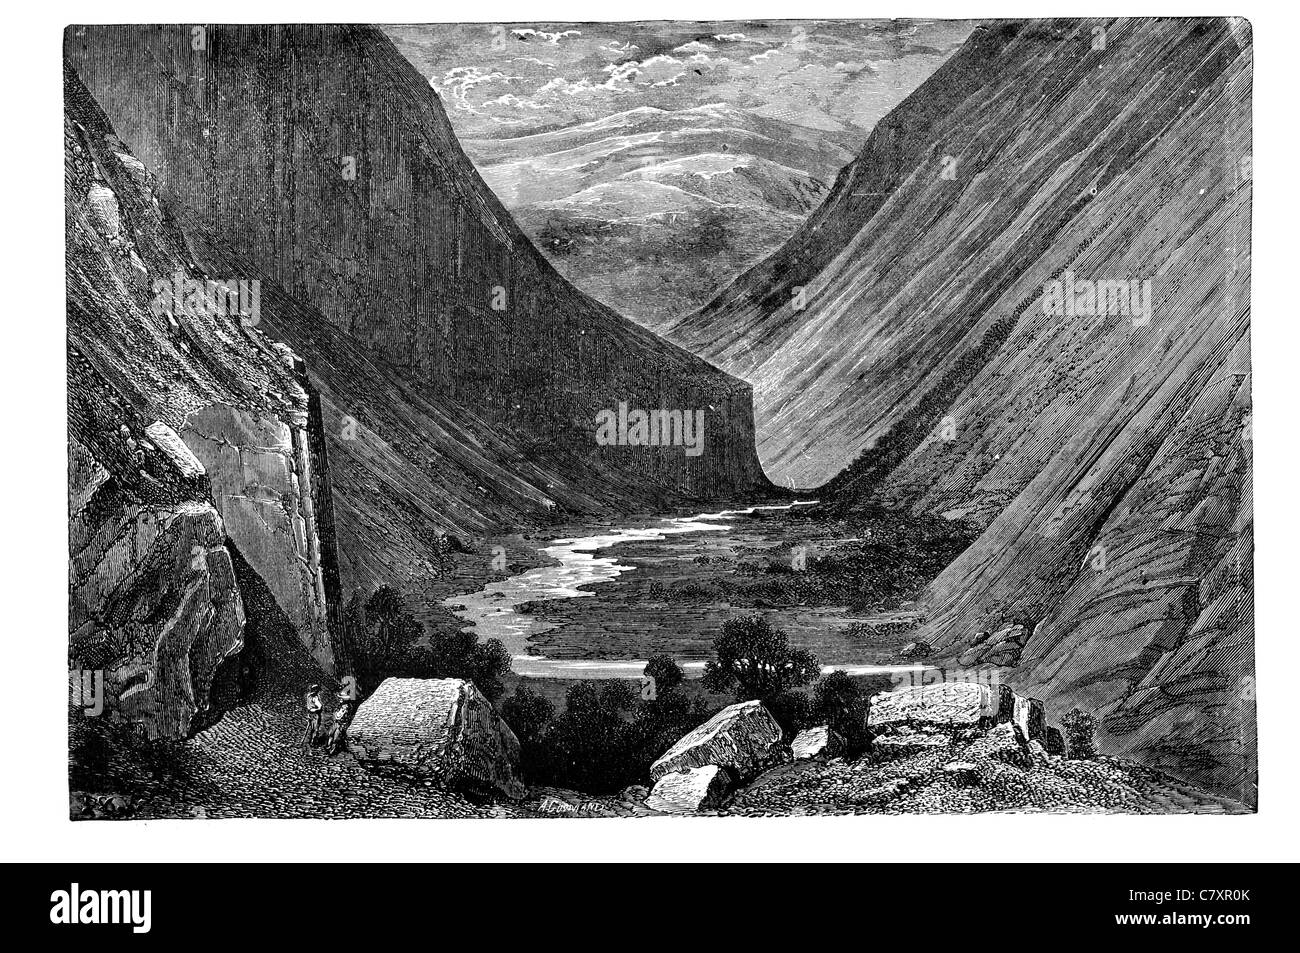 Heimdal superiore Valle Norvegia paesaggio geologia studio geologico formazione di roccia geografia scogliere cliff gola del fiume natura del flusso Foto Stock